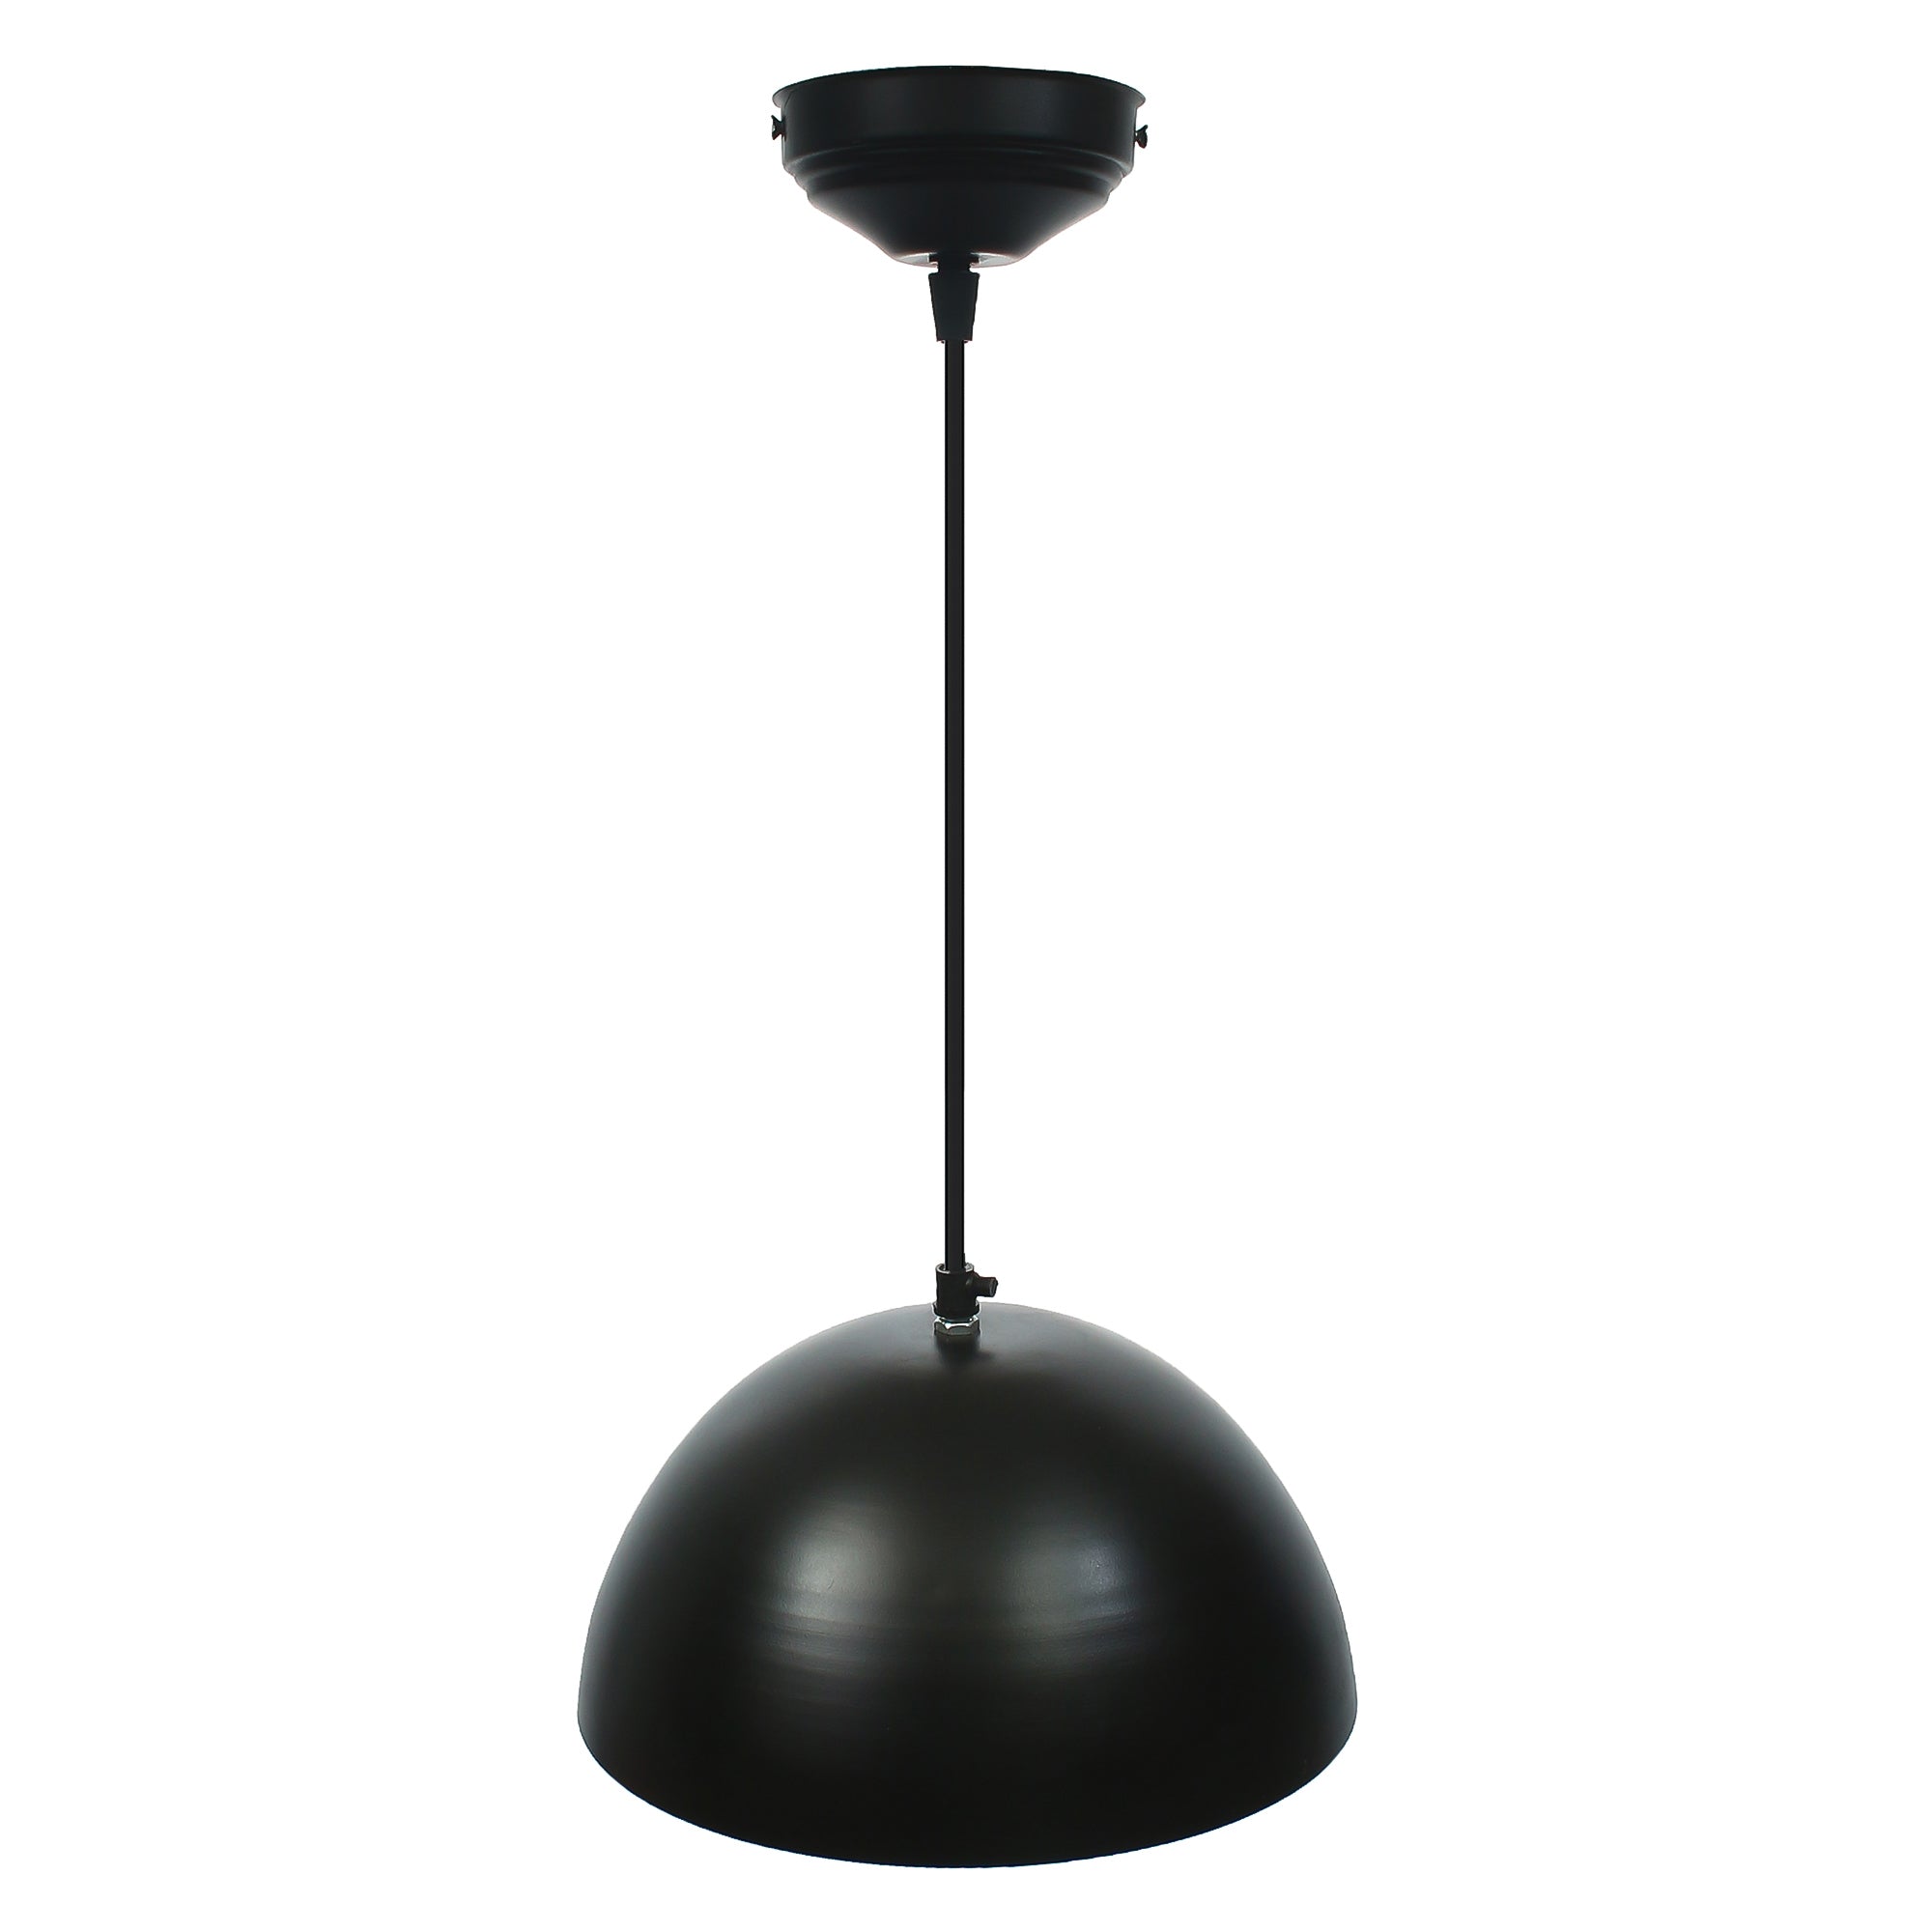 Shining Black Glossy Finish Pendant Light, 10" Diameter Ceiling Hanging Lamp for Home/Living Room/Offices/Restaurants 4